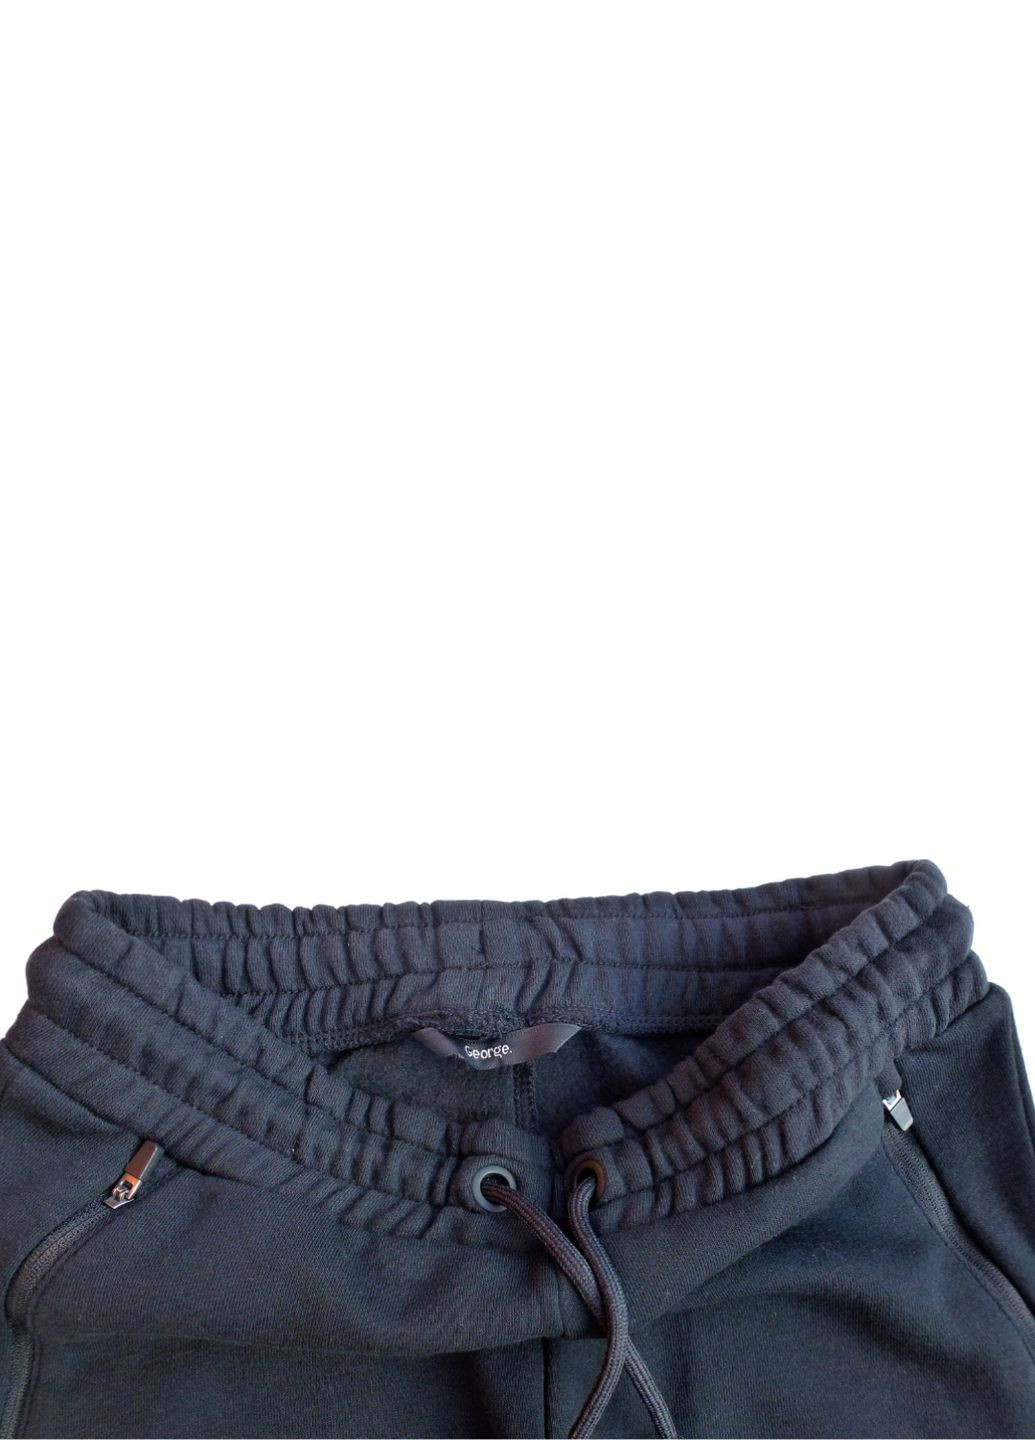 Спортивный костюм (толстовка+штаны) на сапере, утепленный флисом, 140-146 см. George (264028921)